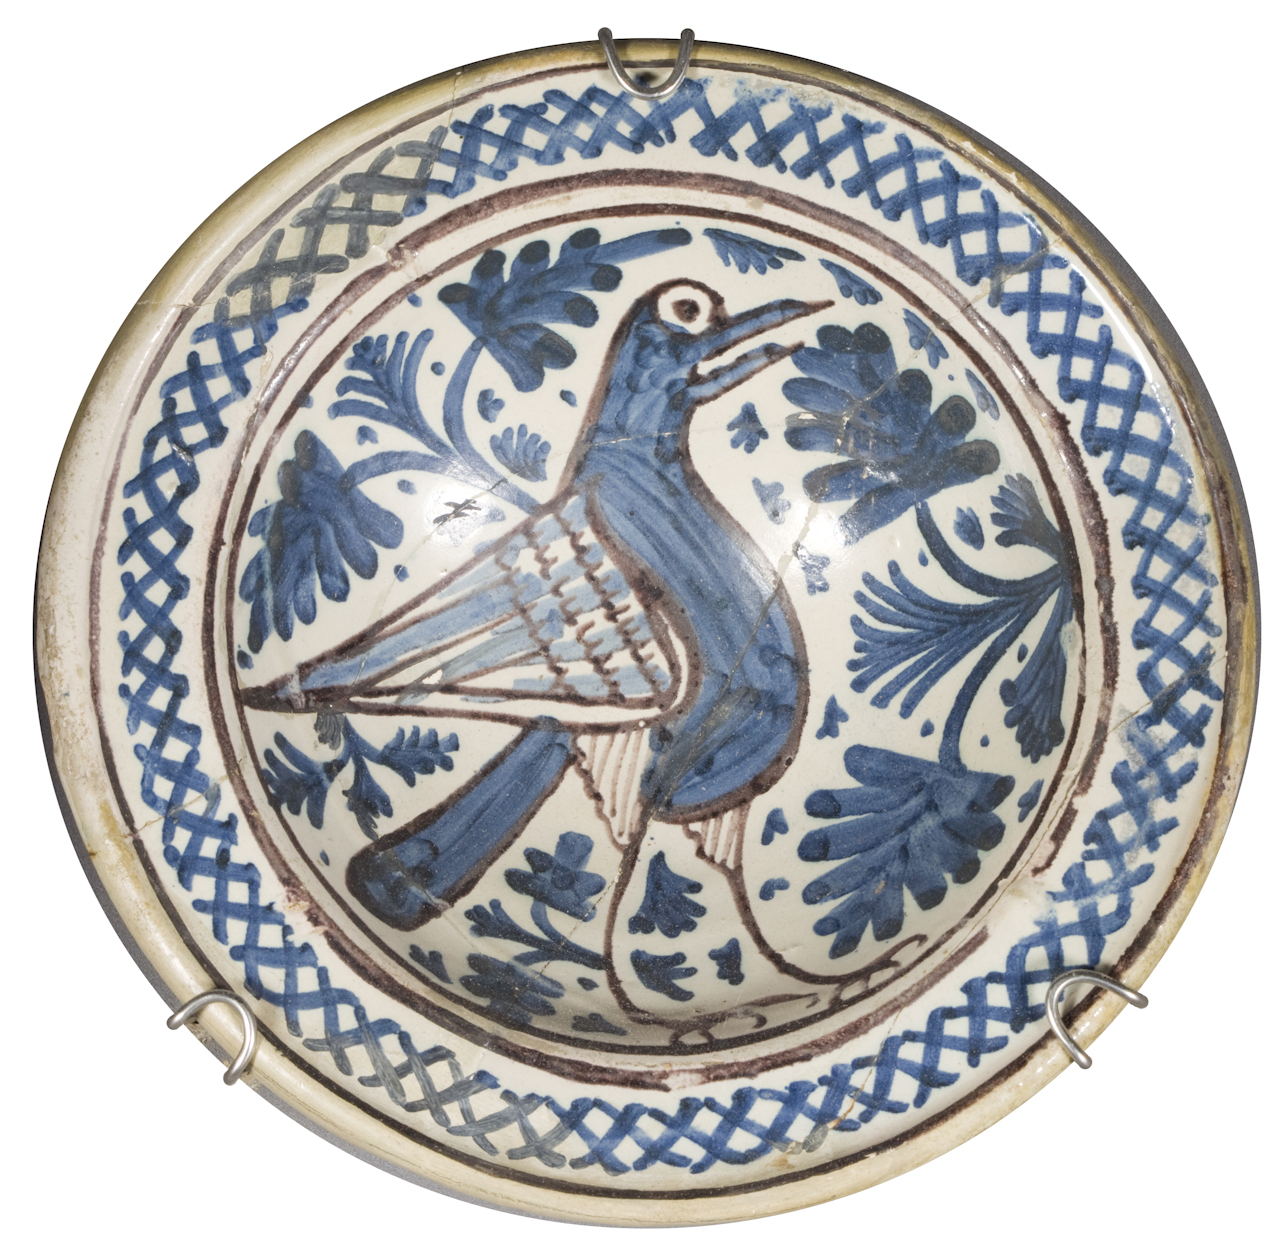 uccello, motivo decorativo vegetale, motivo decorativo a intreccio (coppa) - ambito fiorentino (inizio sec. XV)